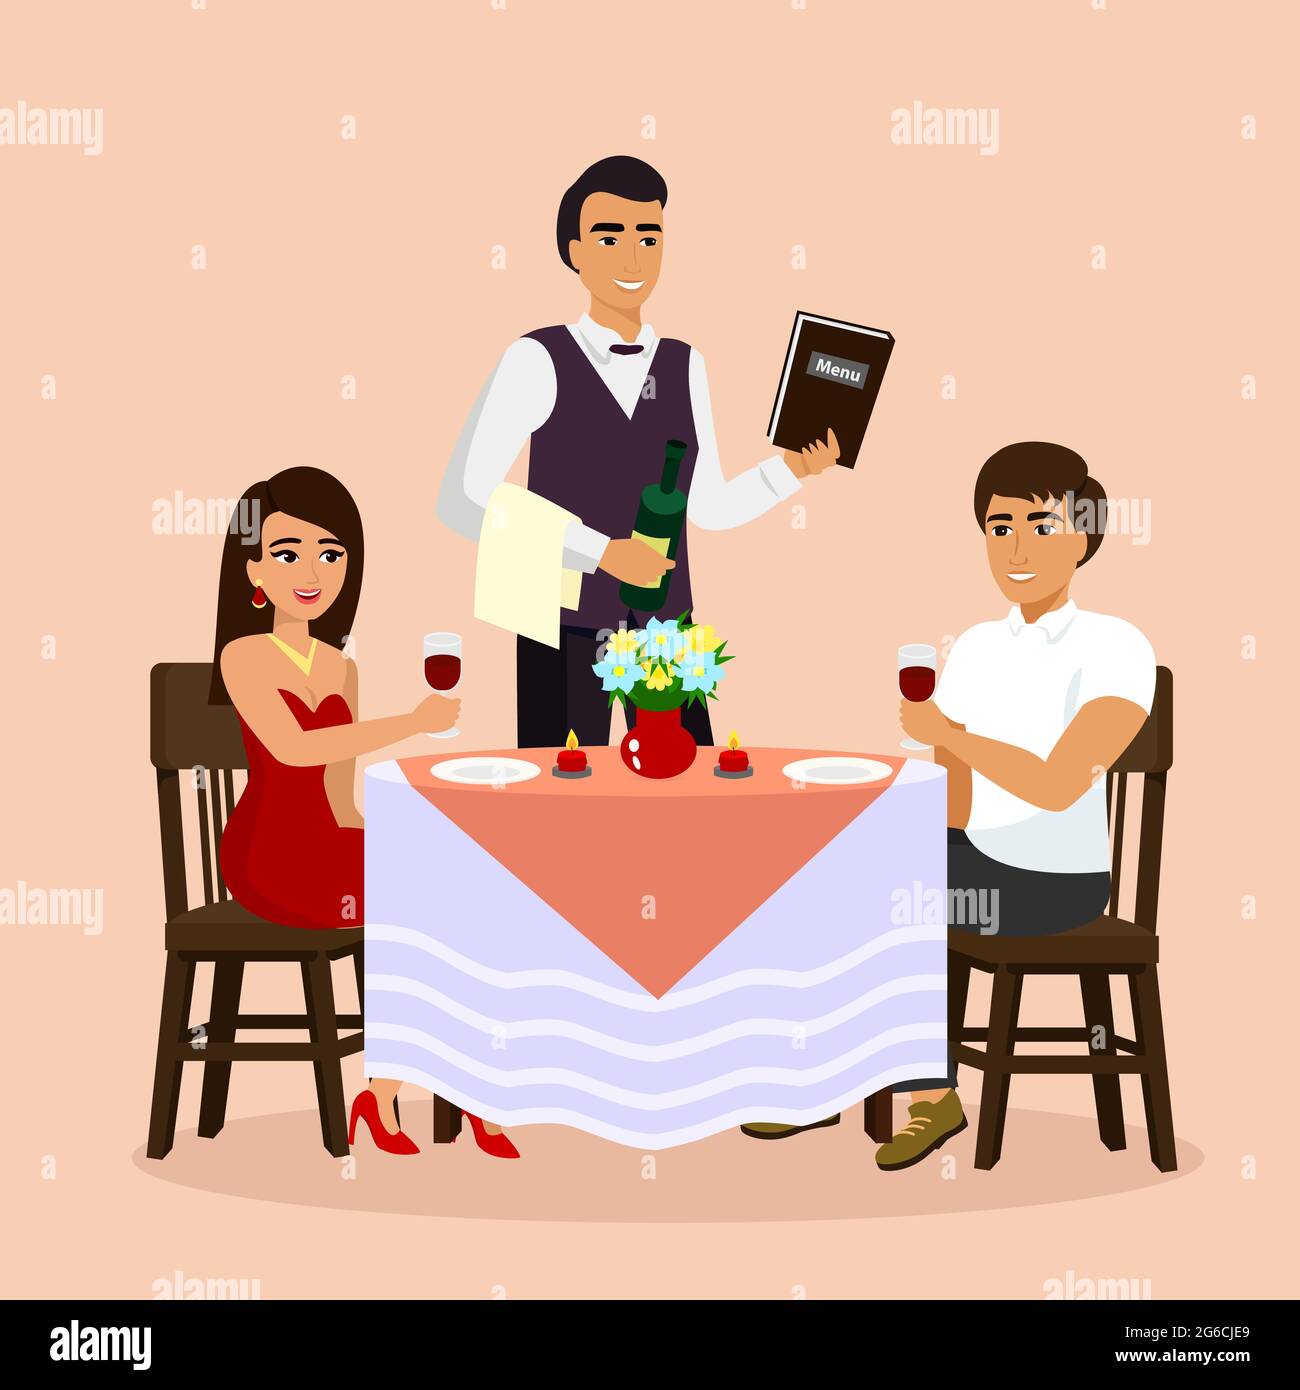 Illustration vectorielle d'un couple aimant au restaurant avec serveur, boire du vin dans un café. L'homme et la femme ont un style de dessin animé plat et date. Illustration de Vecteur